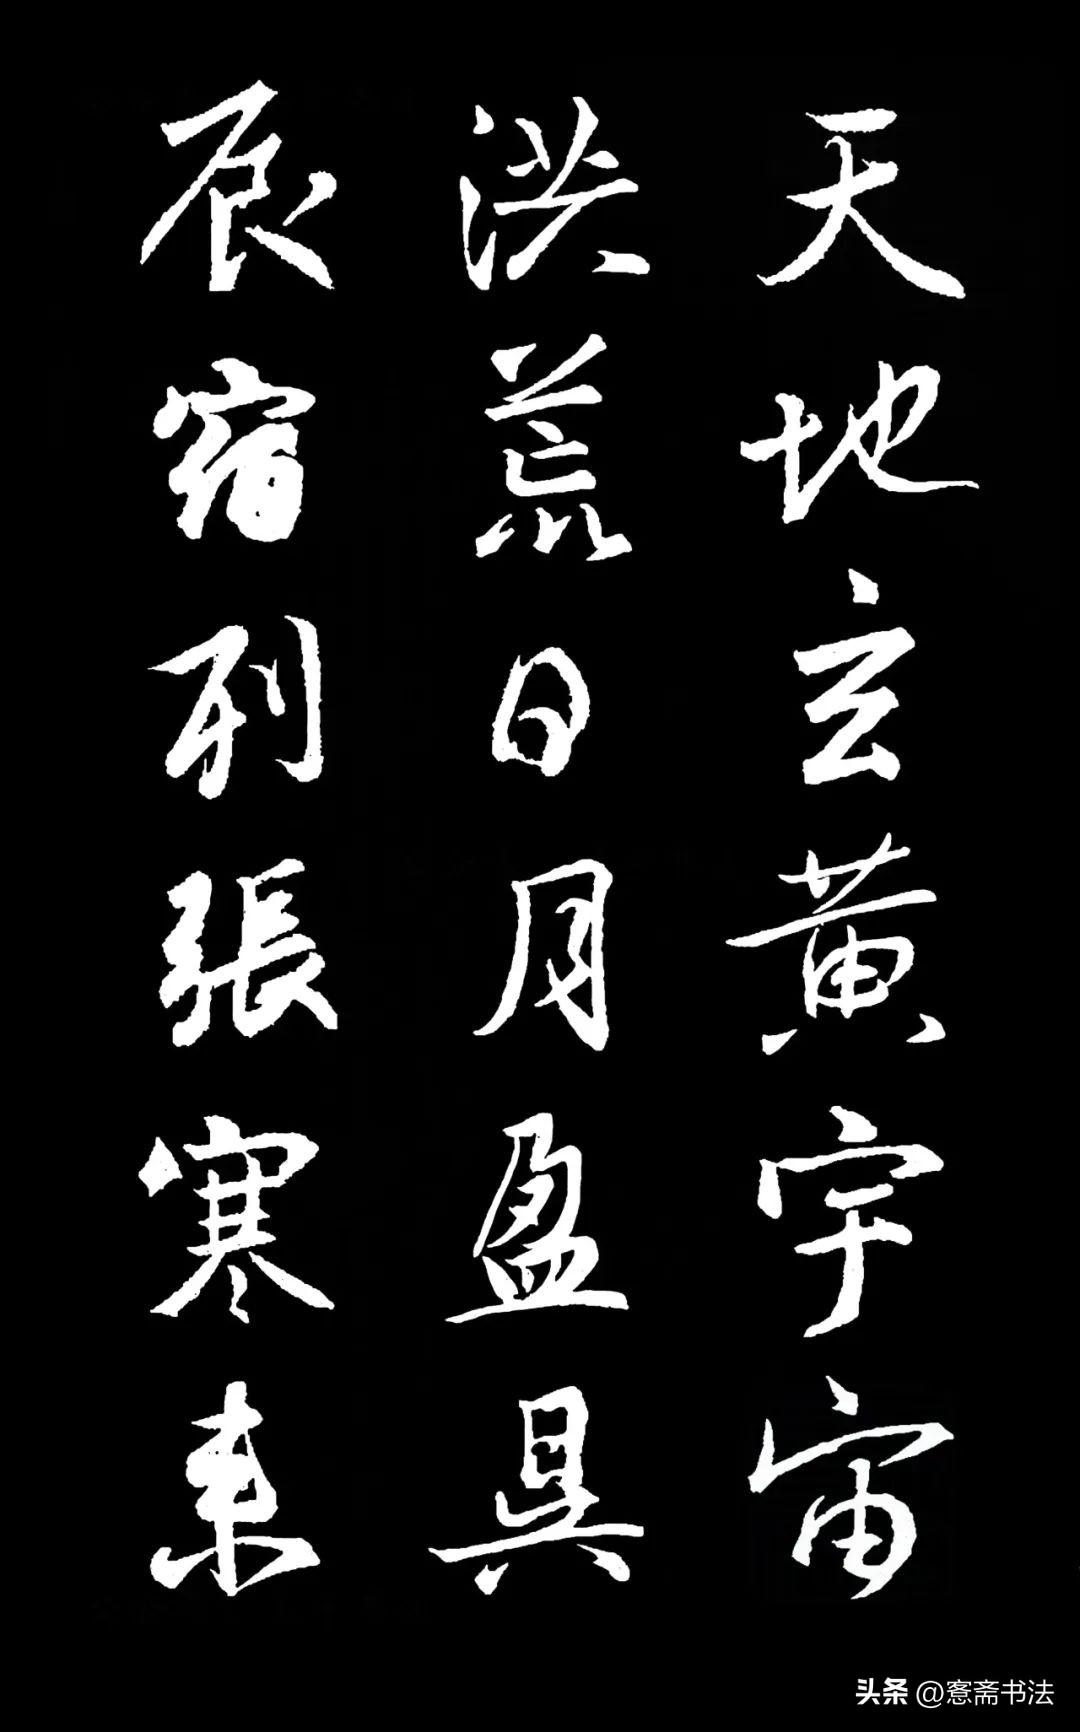 中国历代书法名家作品集字:王羲之《集字千字文》1000个行书字体